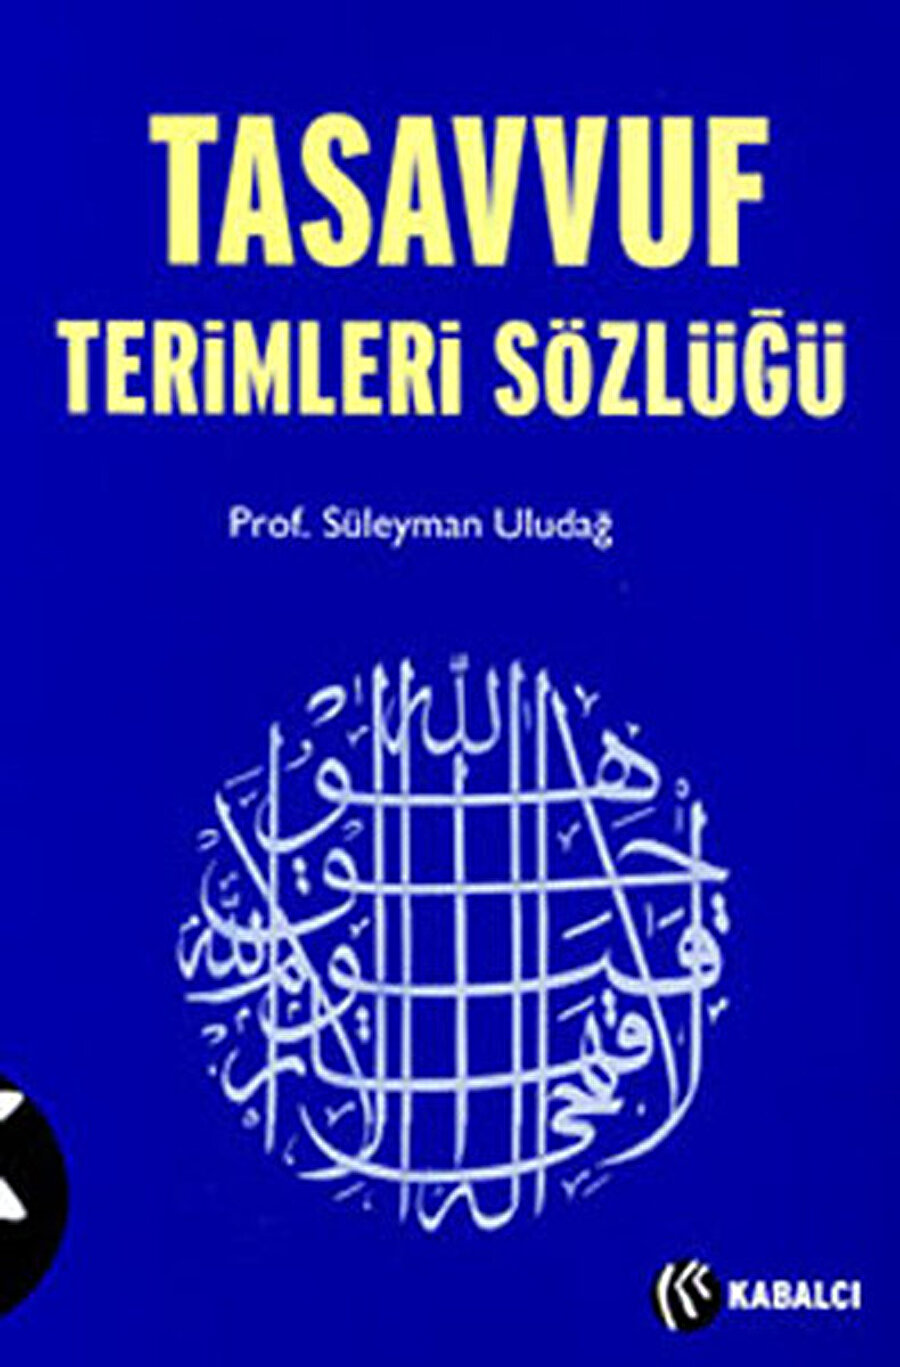 Tasavvuf Terimleri Sözlüğü, Süleyman Uludağ, Kabalcı